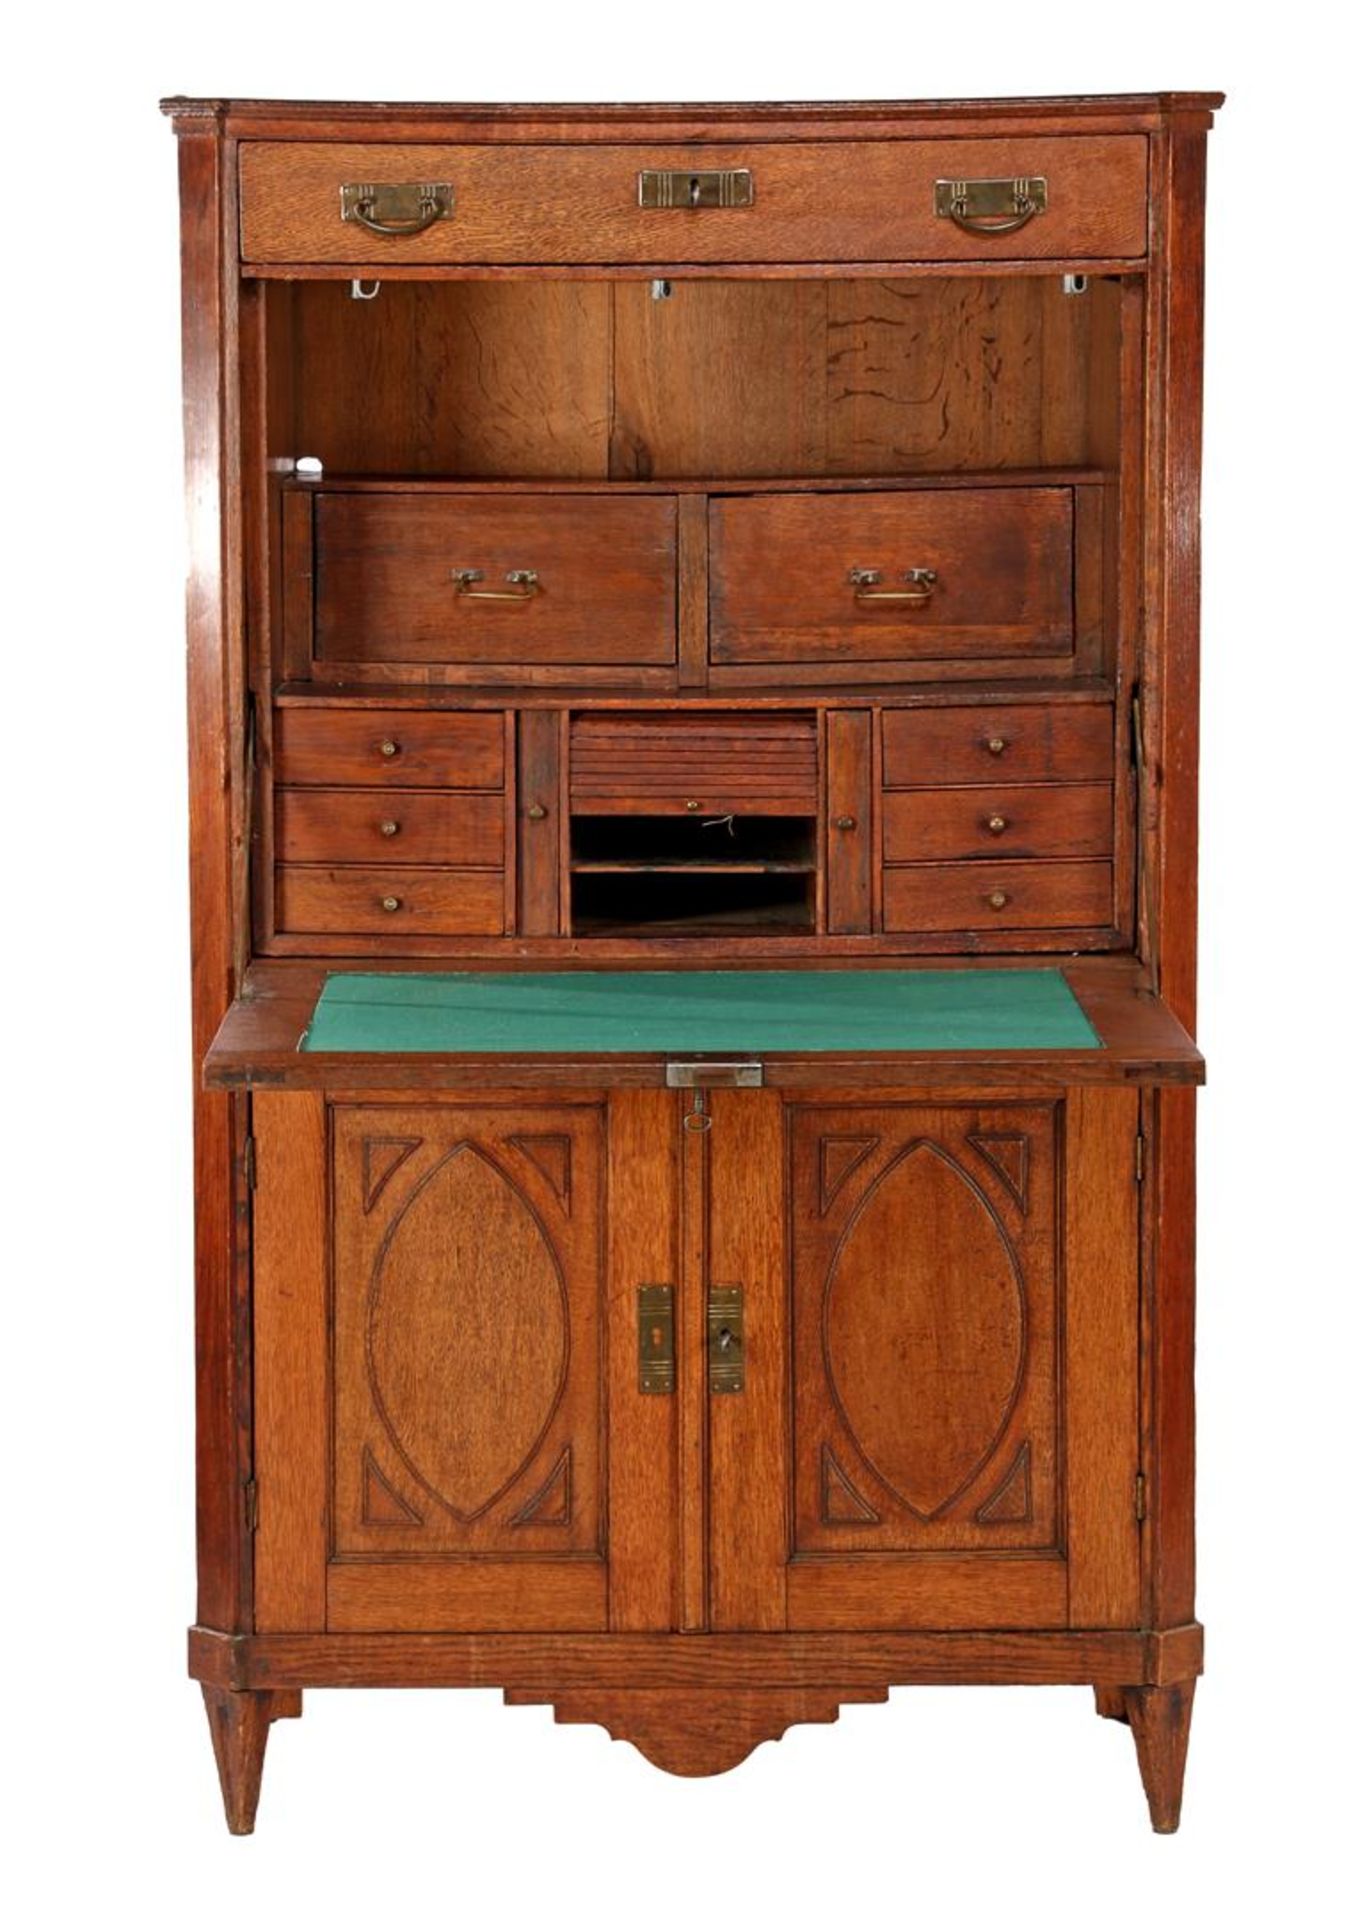 Oak flap desk, 19th century